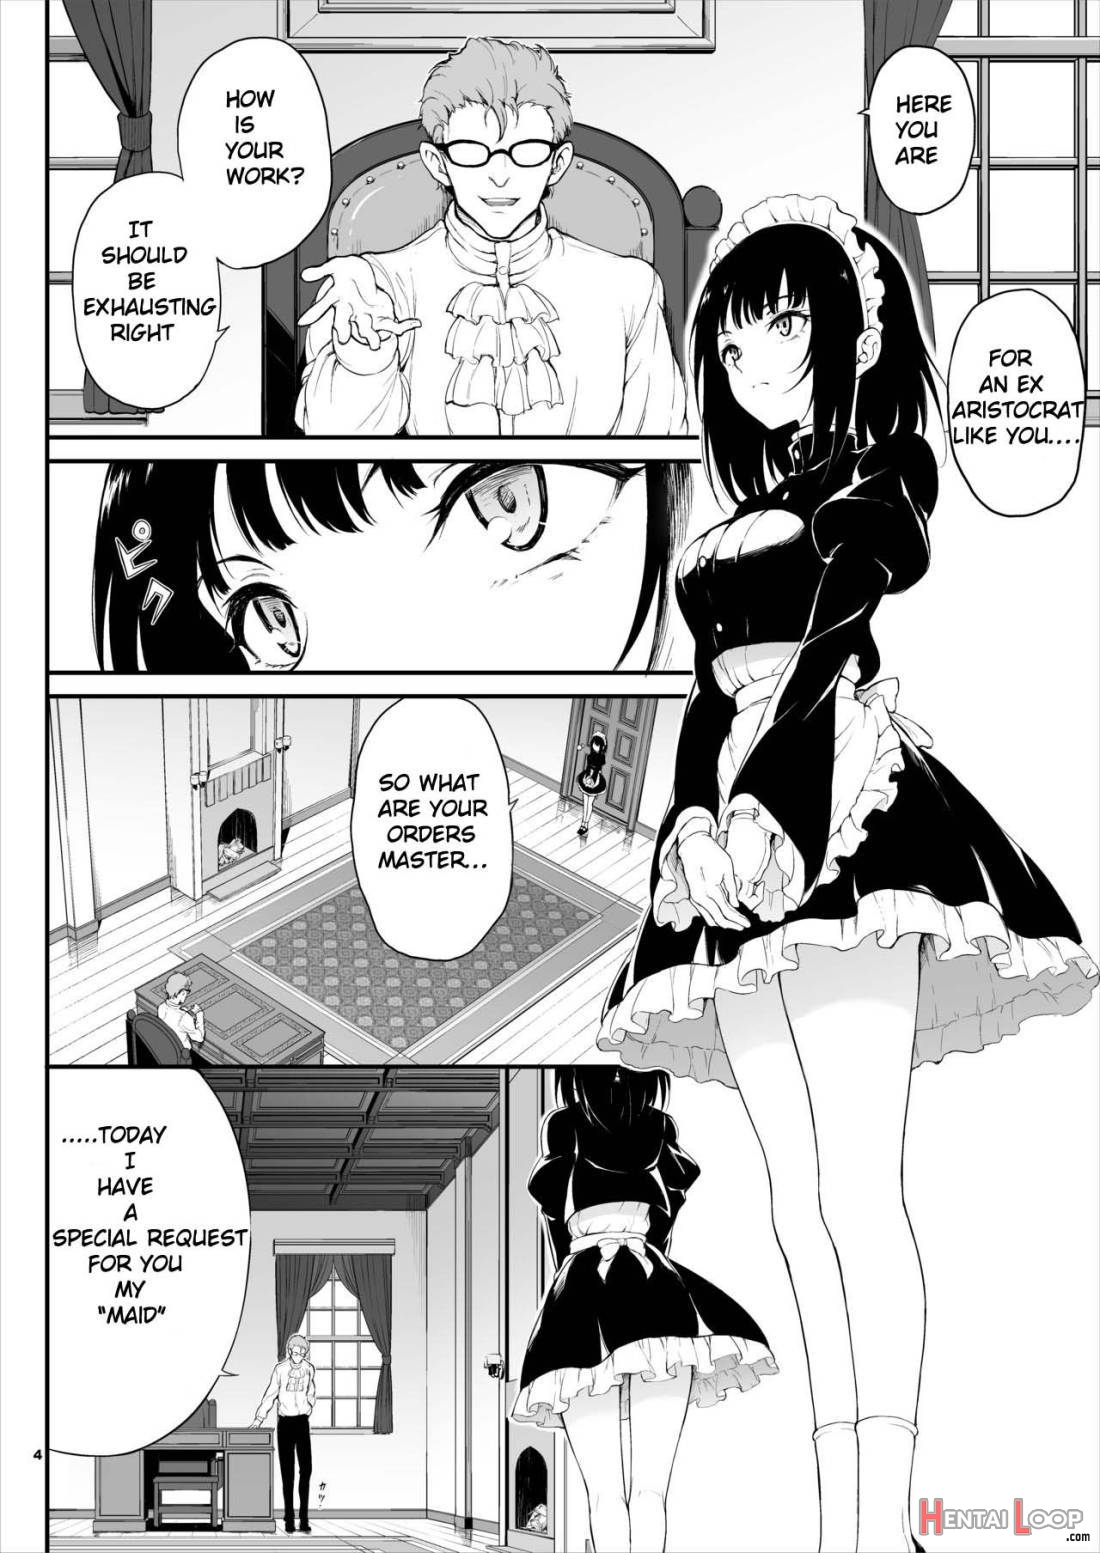 Maid kyouiku manga